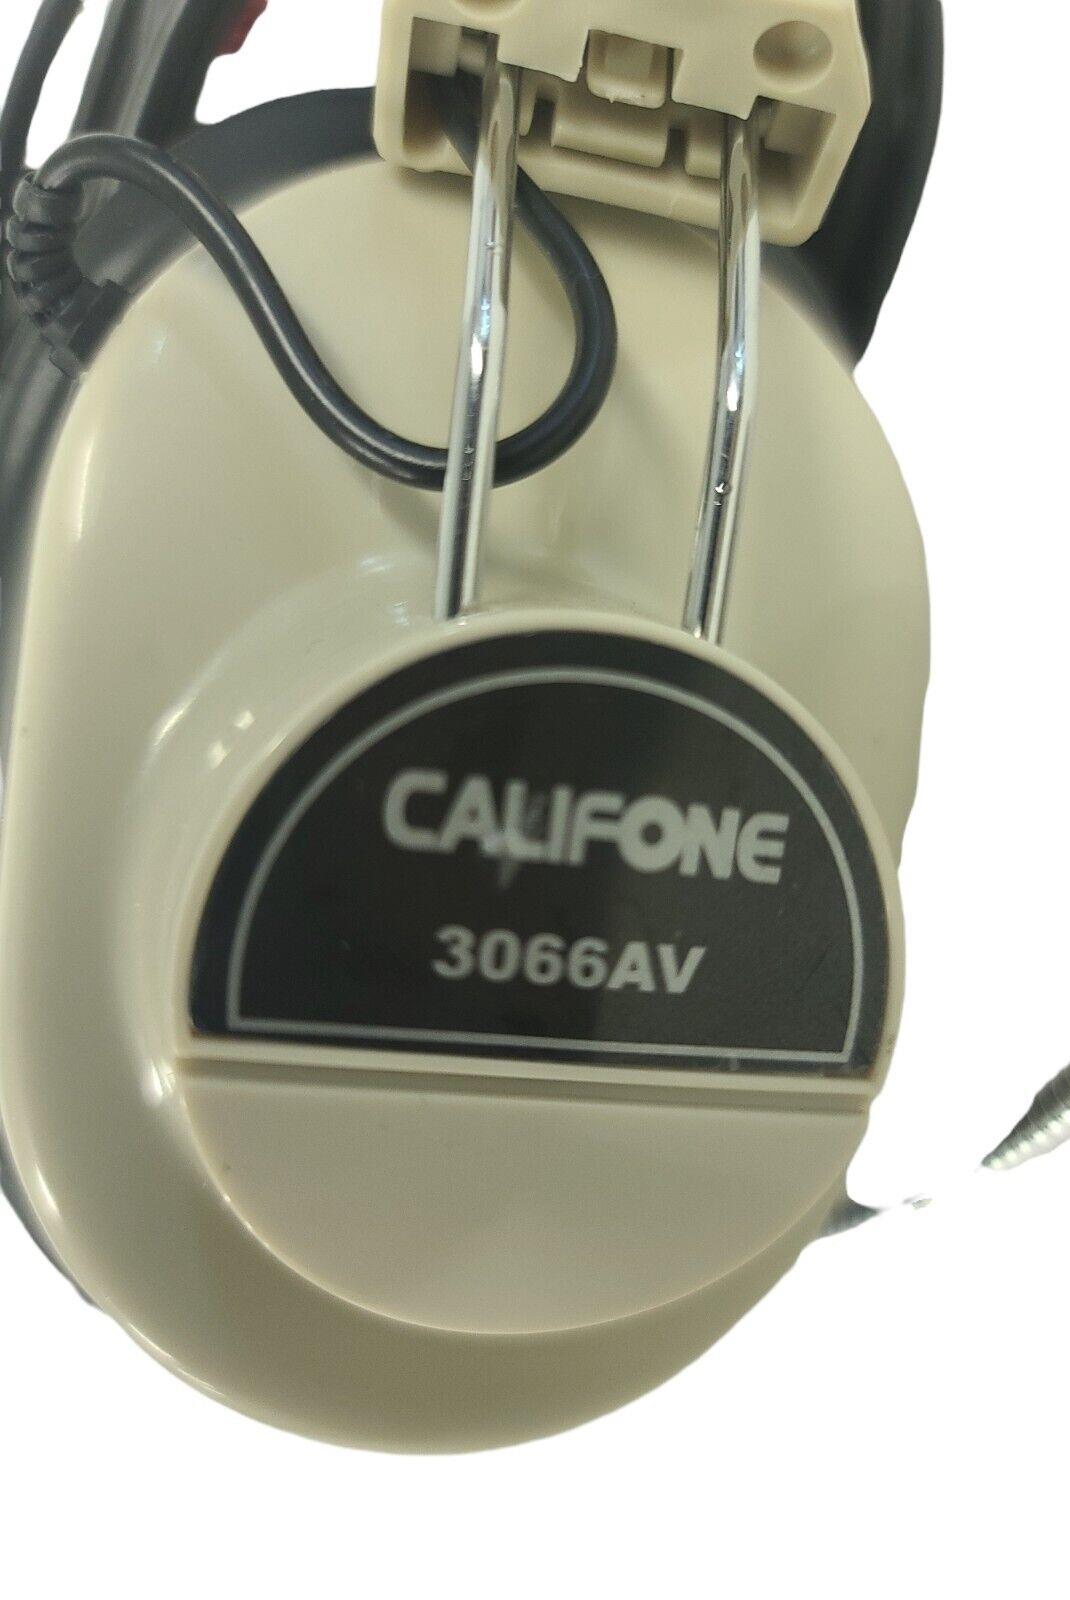 Lot of 2 Califone 3066AV BEIGE 3.5mm Headphone DELUXE Multi-Media Headset